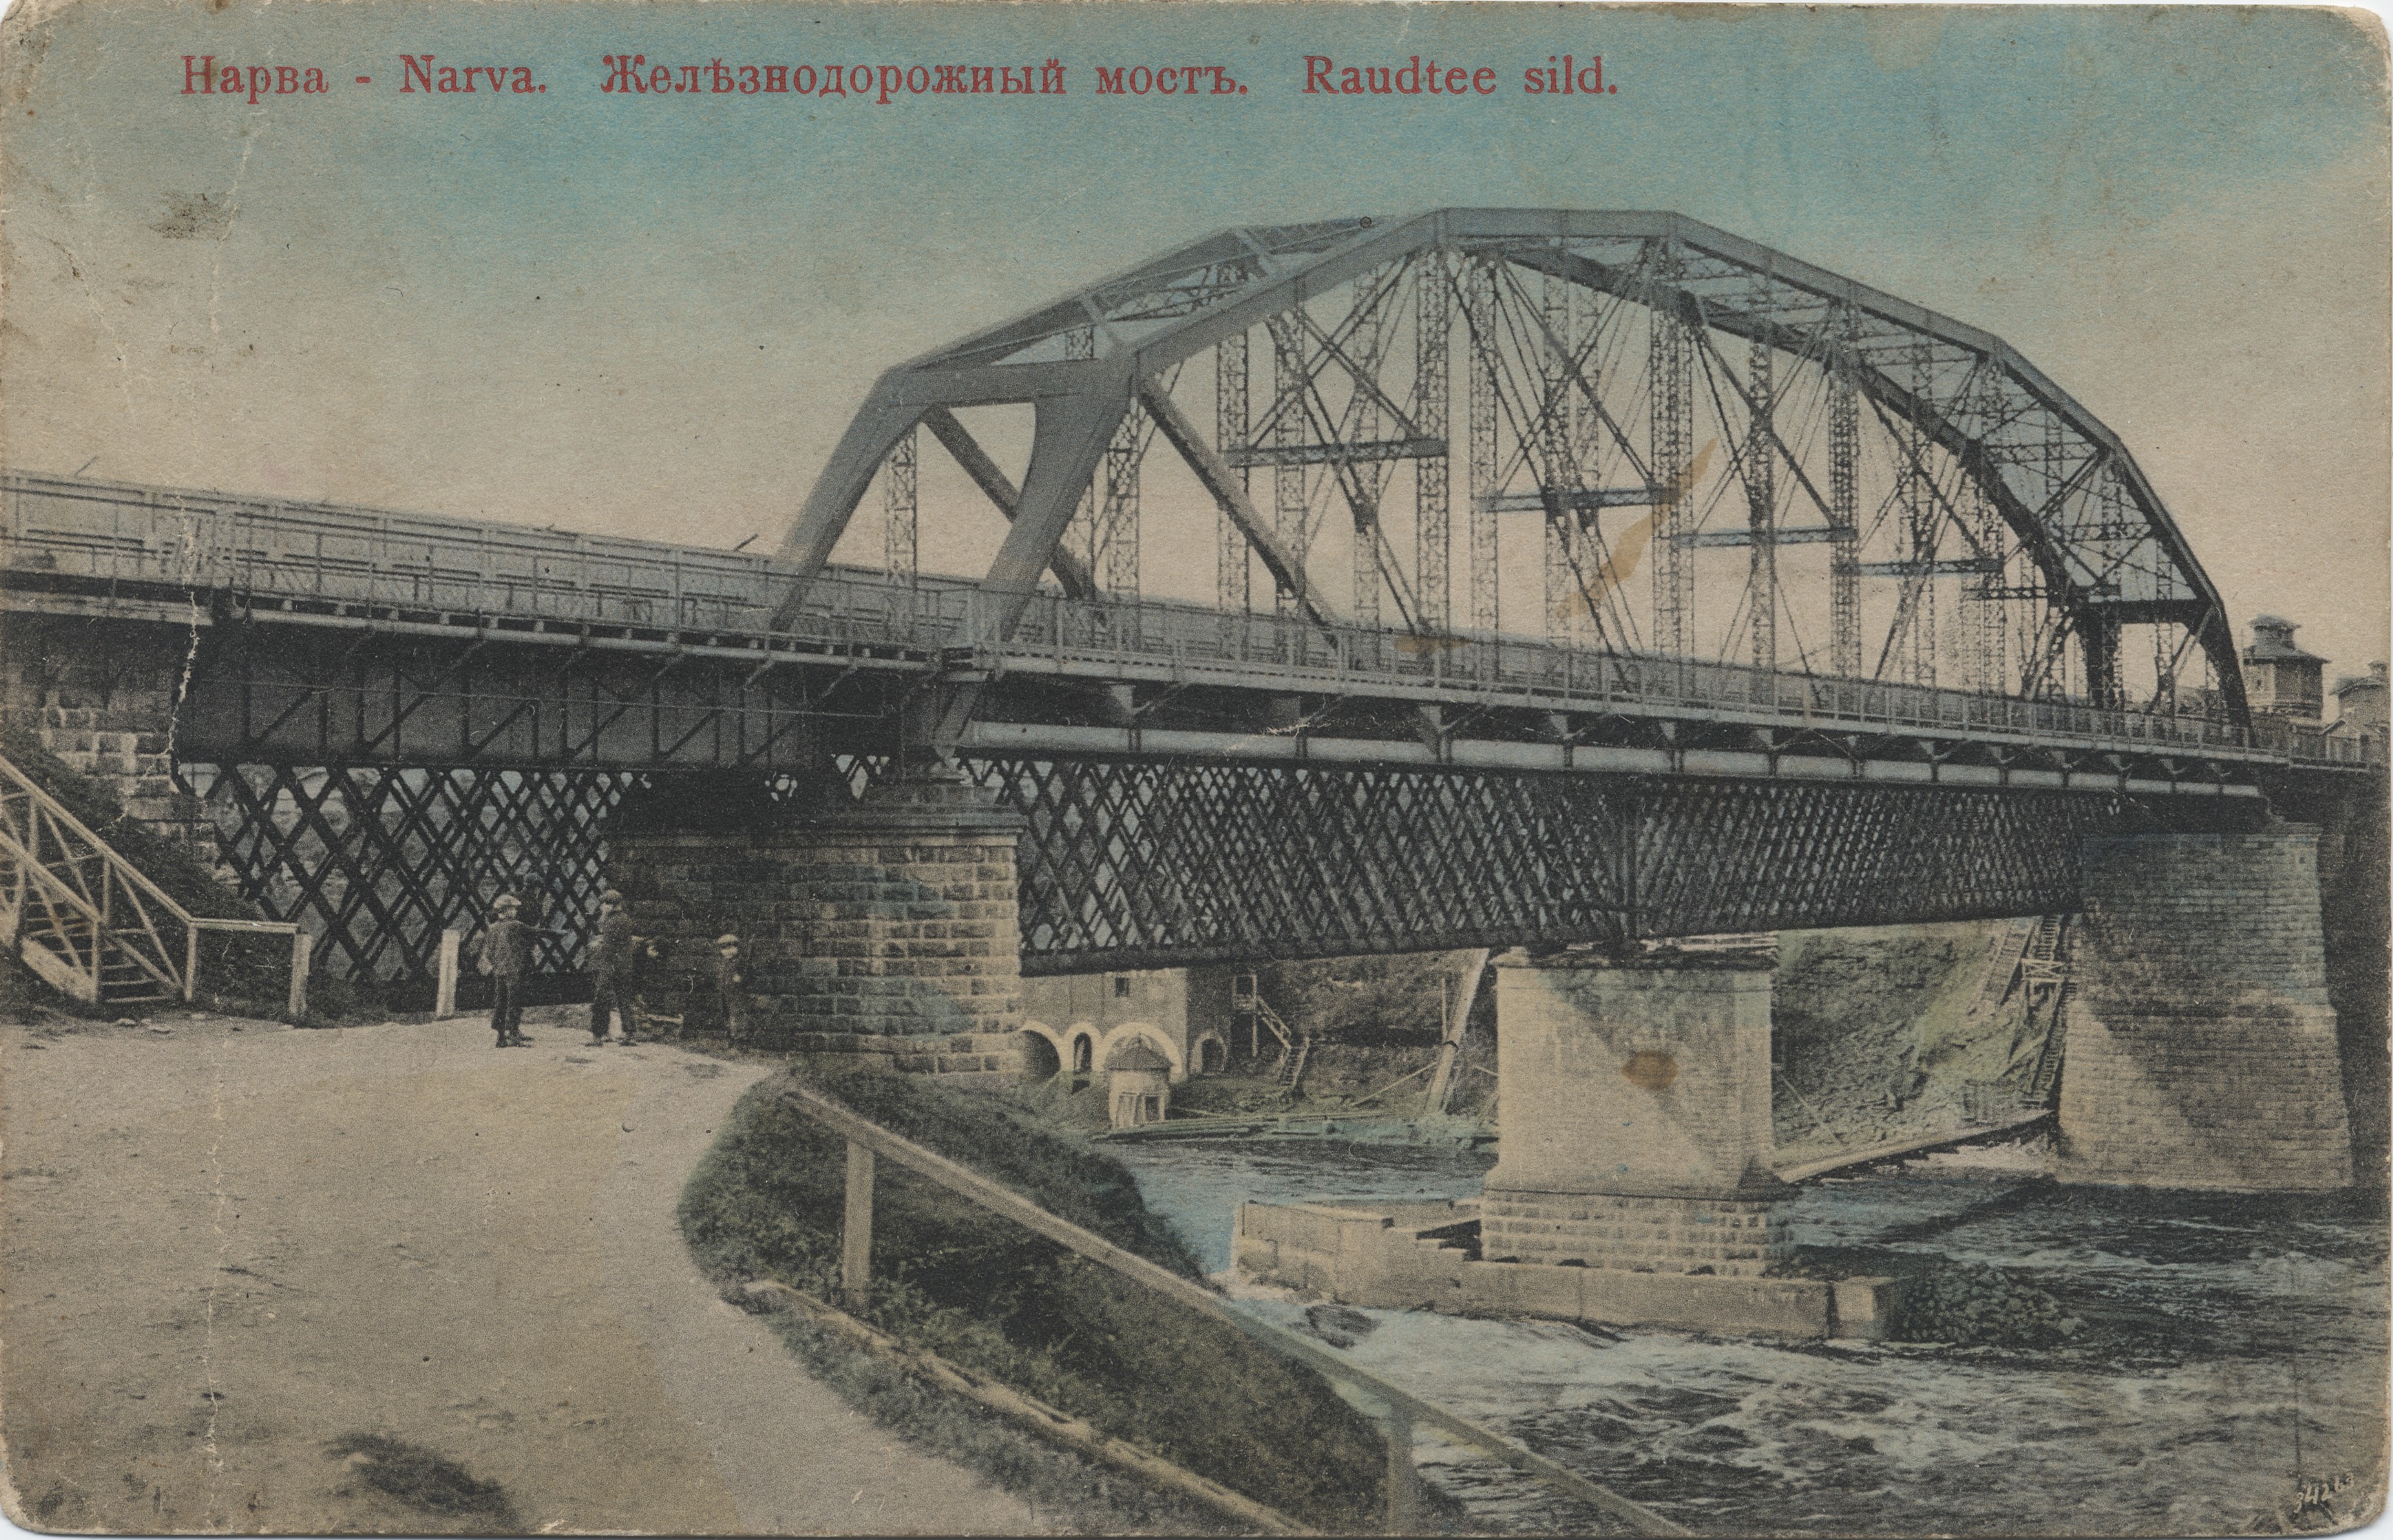 Narva : railway bridge = Narva railway bridge